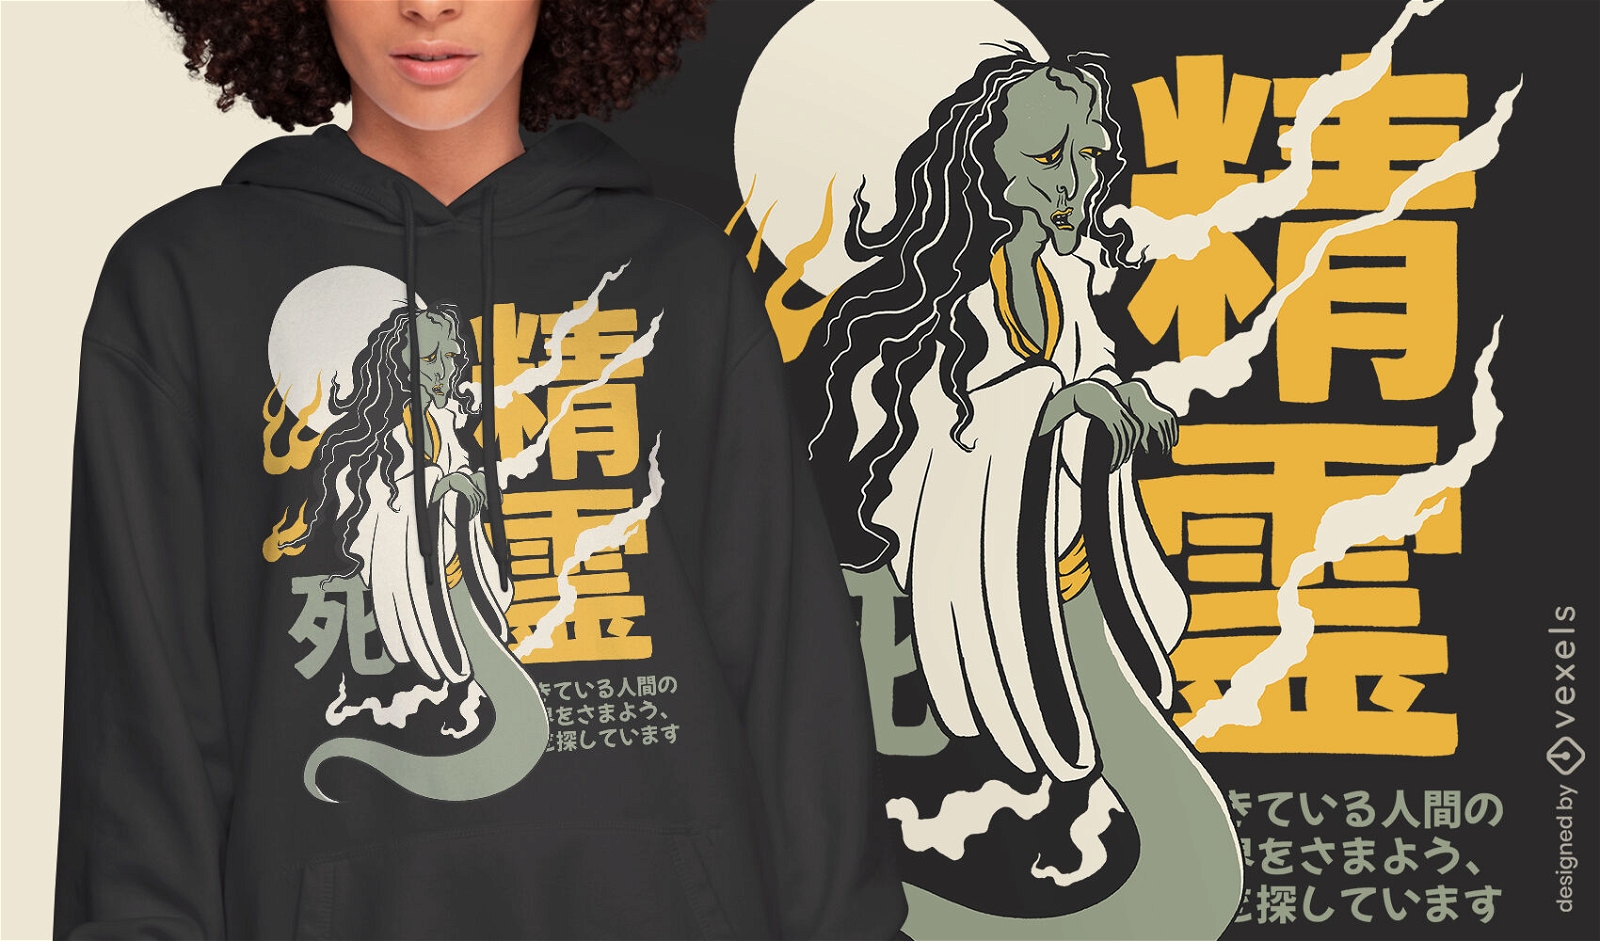 Yurei woman ghost japanese t-shirt design